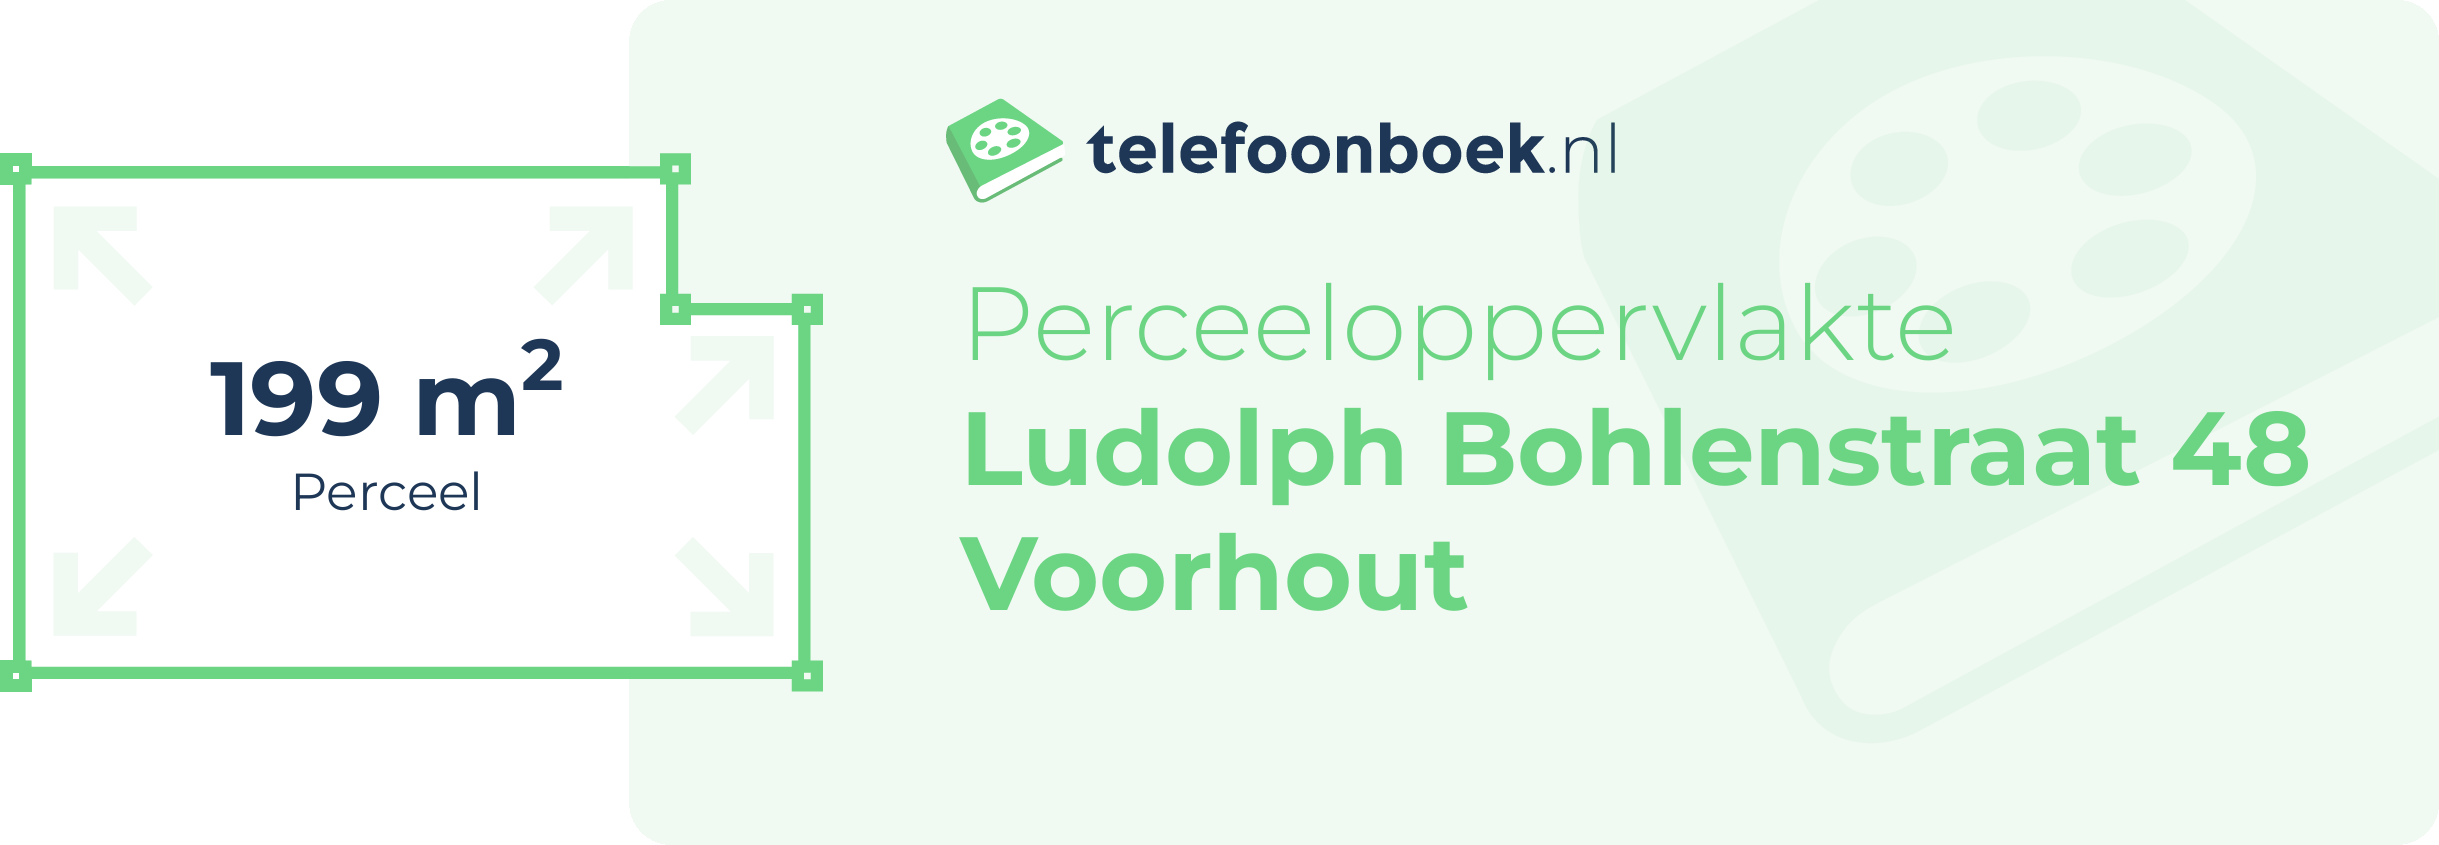 Perceeloppervlakte Ludolph Bohlenstraat 48 Voorhout